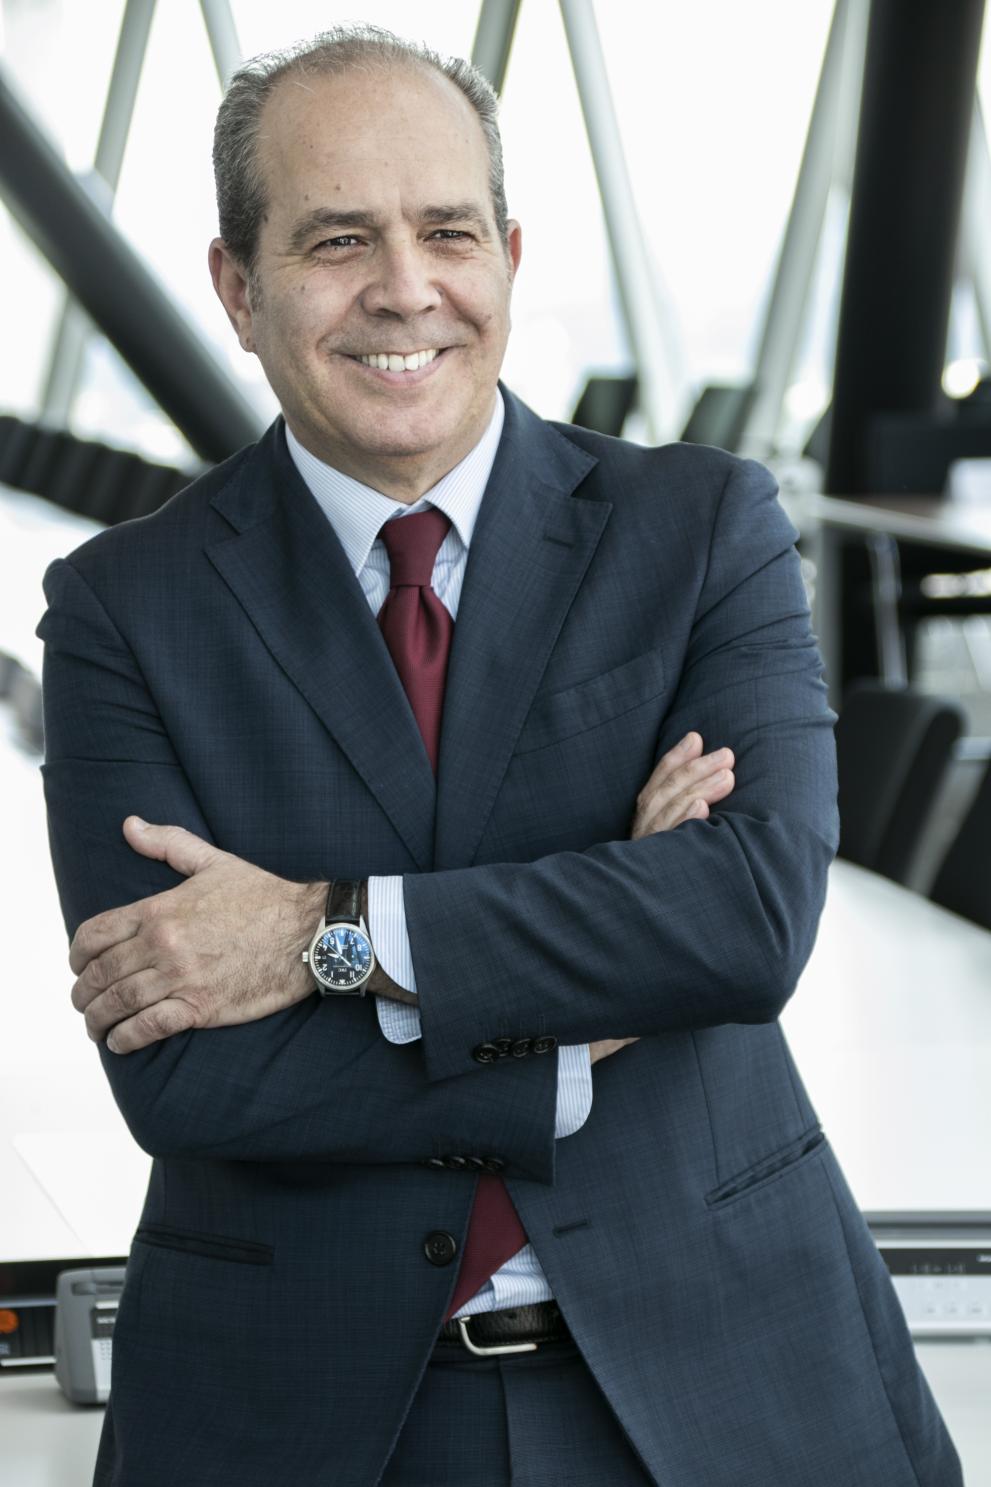 Fausto Parente, EIOPA Executive Director